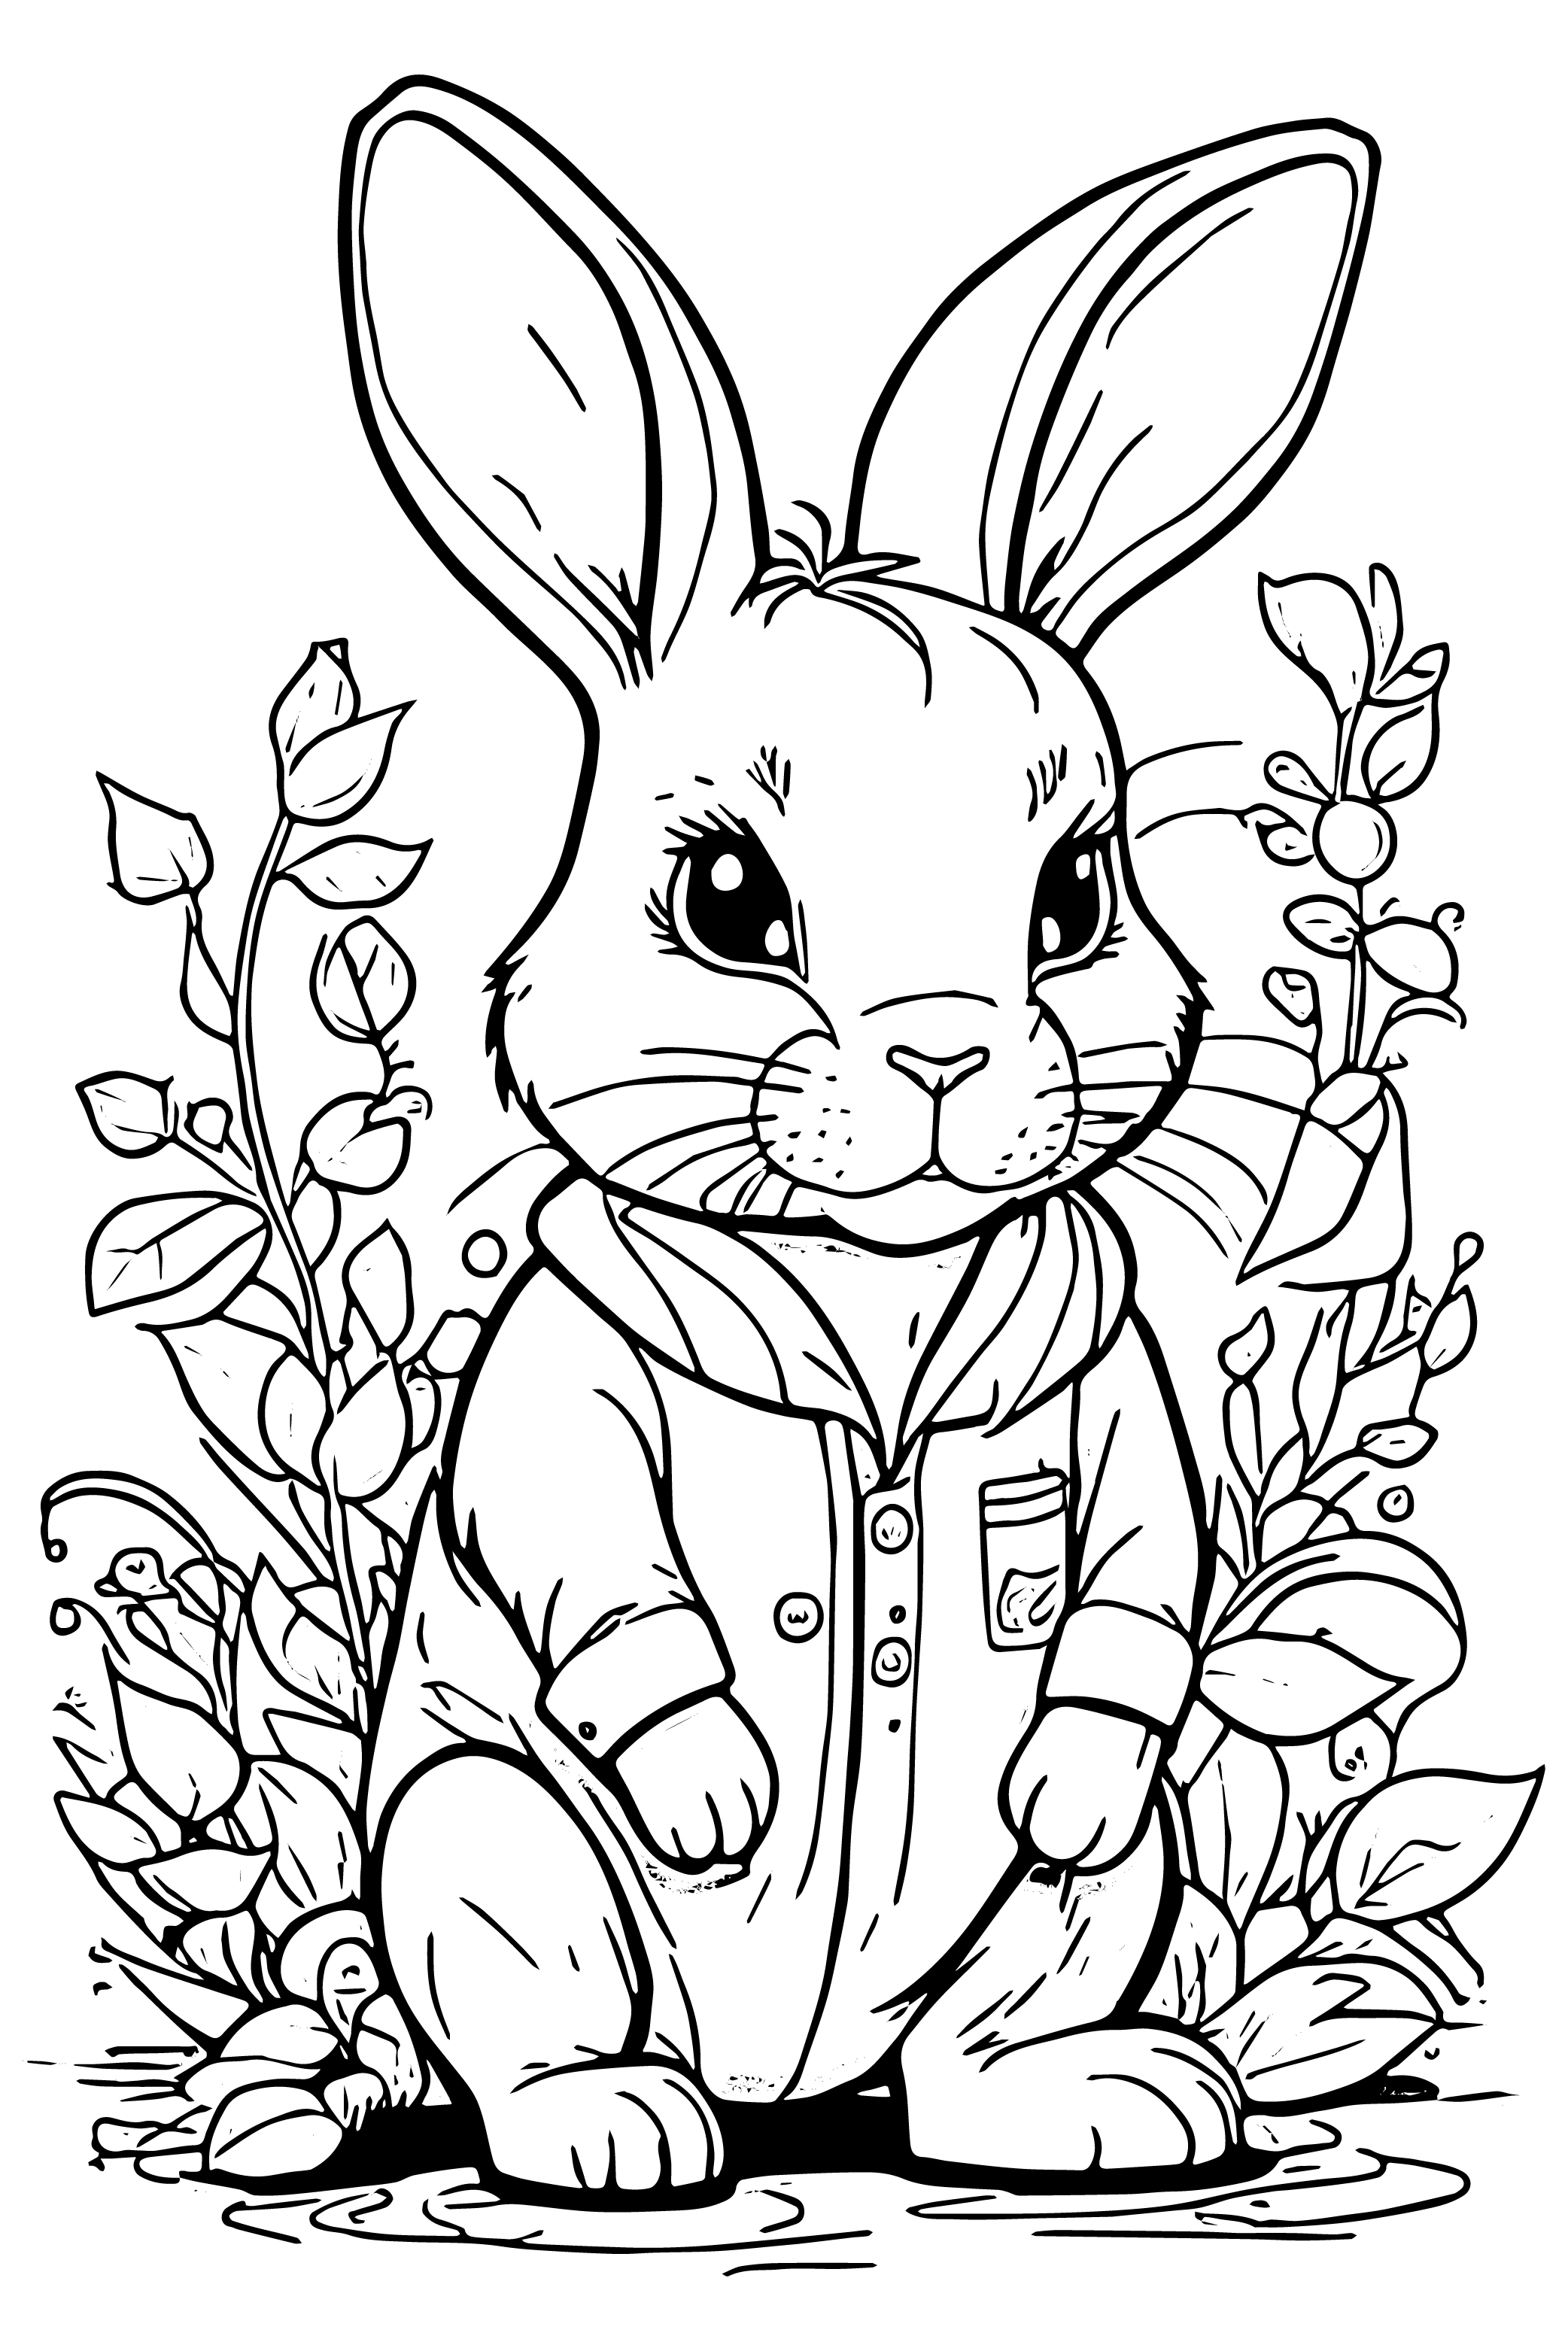 Раскраска заяц в рубашке сидит в траве формата А4 в высоком качестве